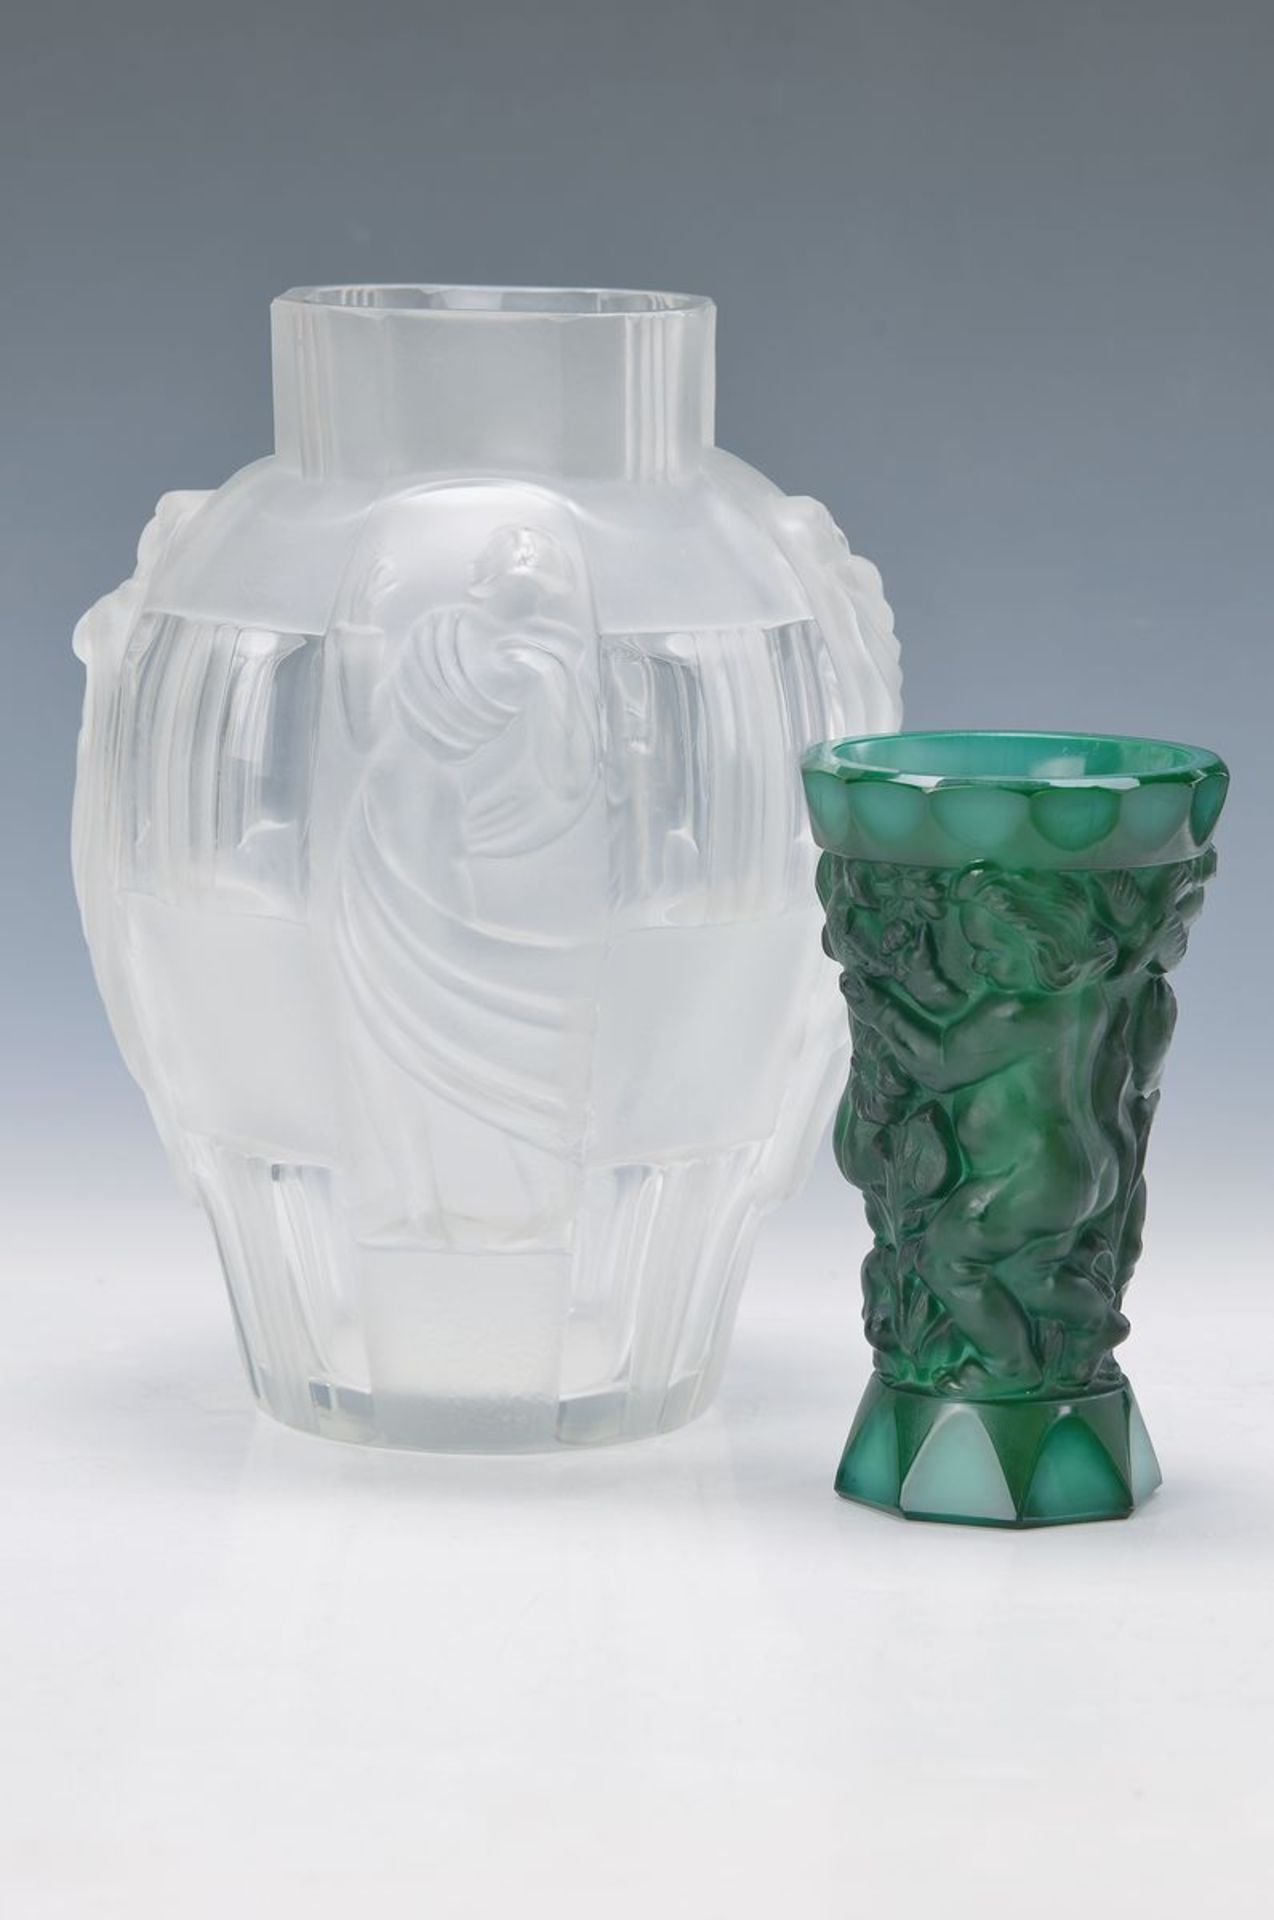 Zwei Vasen, Curt Schlevogt, 30er Jahre, grünes sog. Malachitglas, mit reliefiertem Dekor, umlaufende